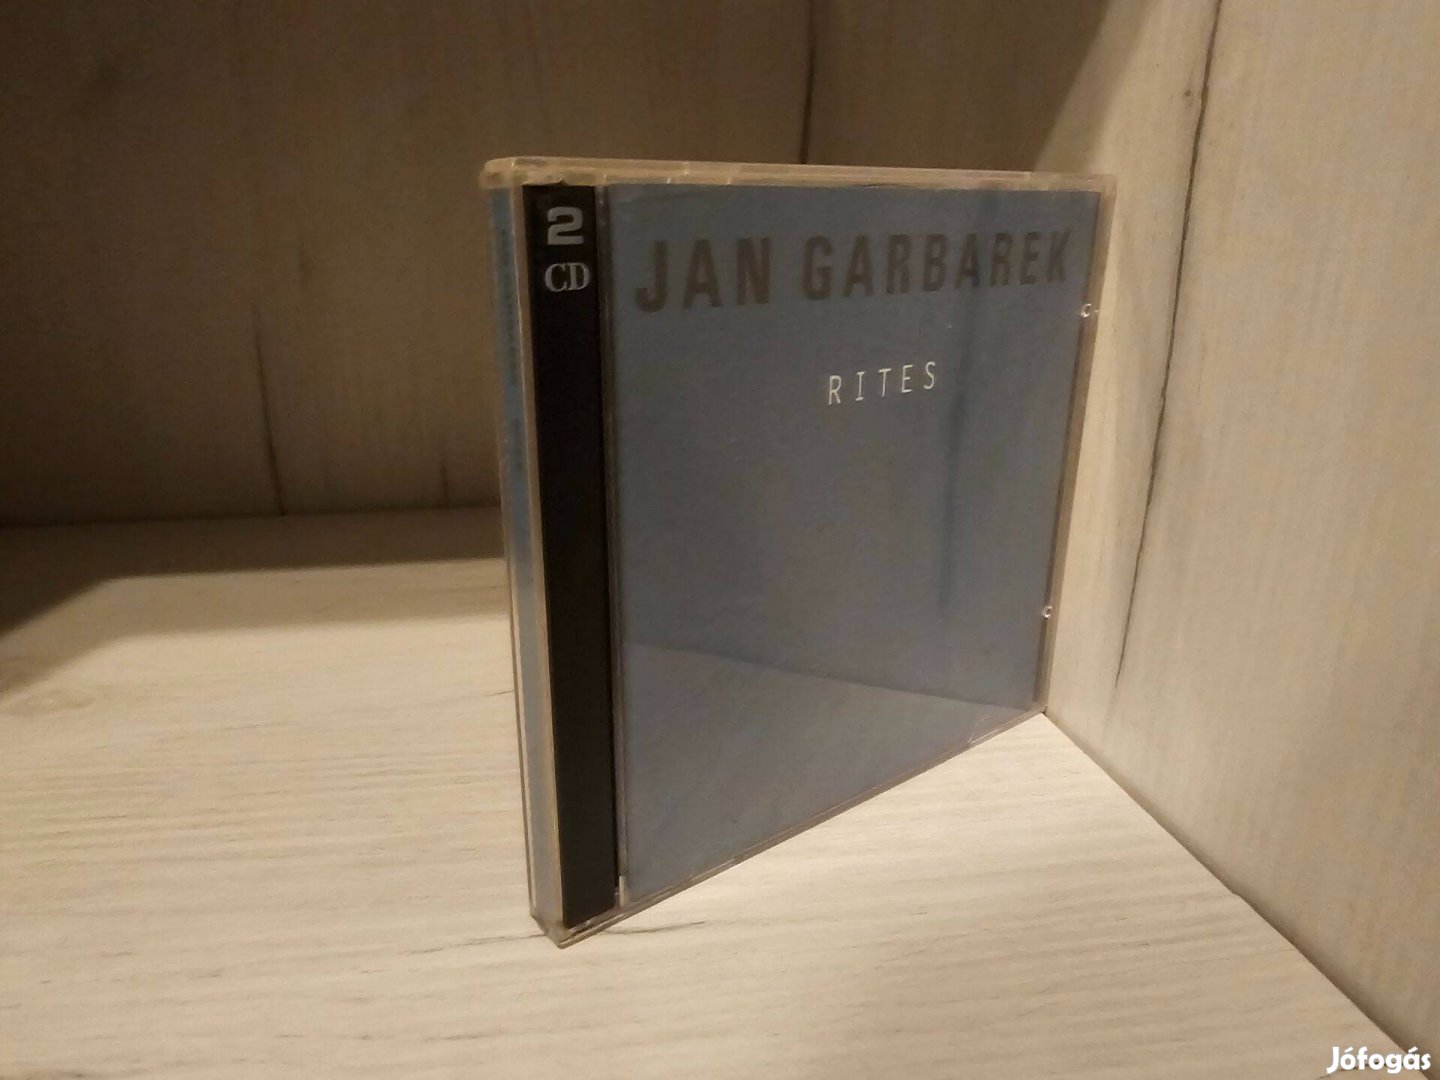 Jan Garbarek Rites dupla CD